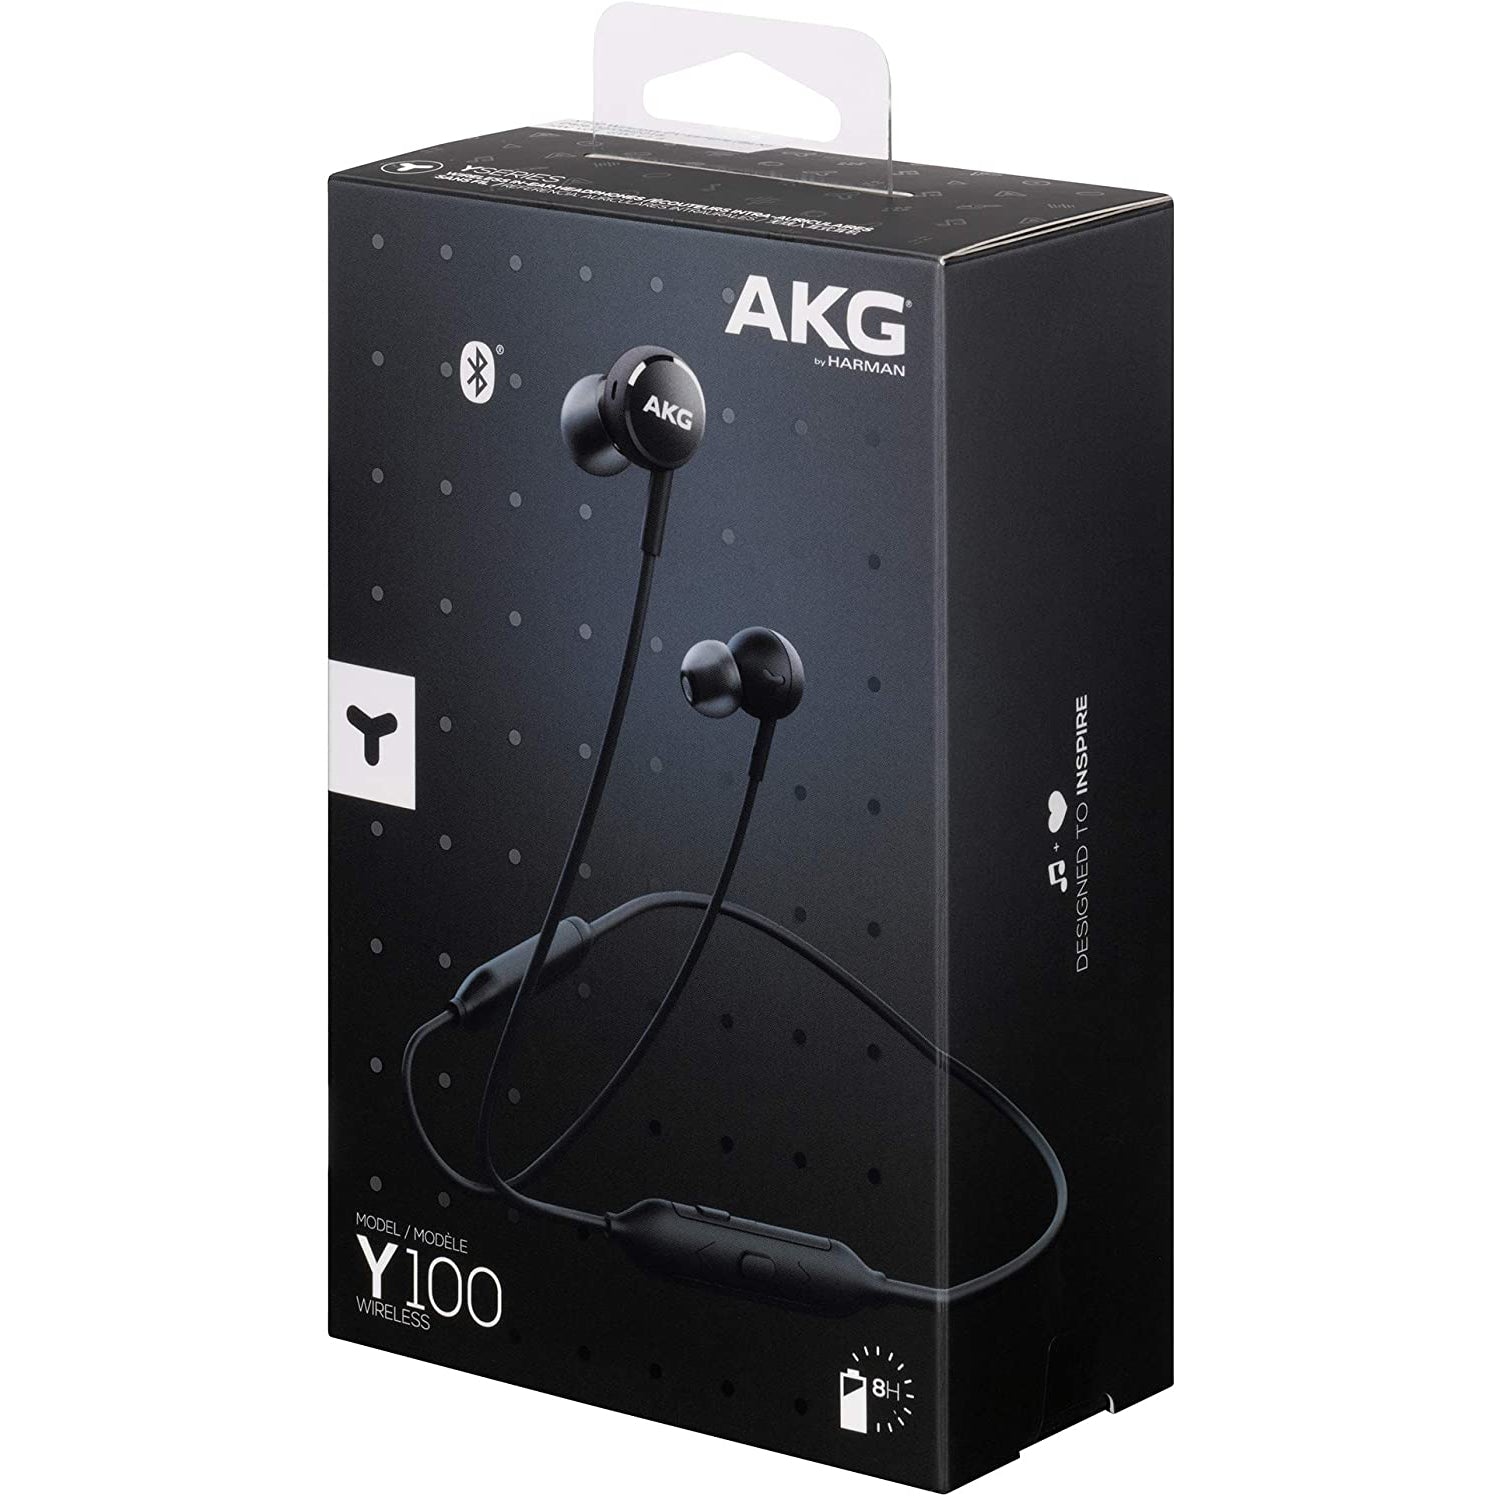 AKG Y100 Wireless In-Ear Headphones - Black - Refurbished Good